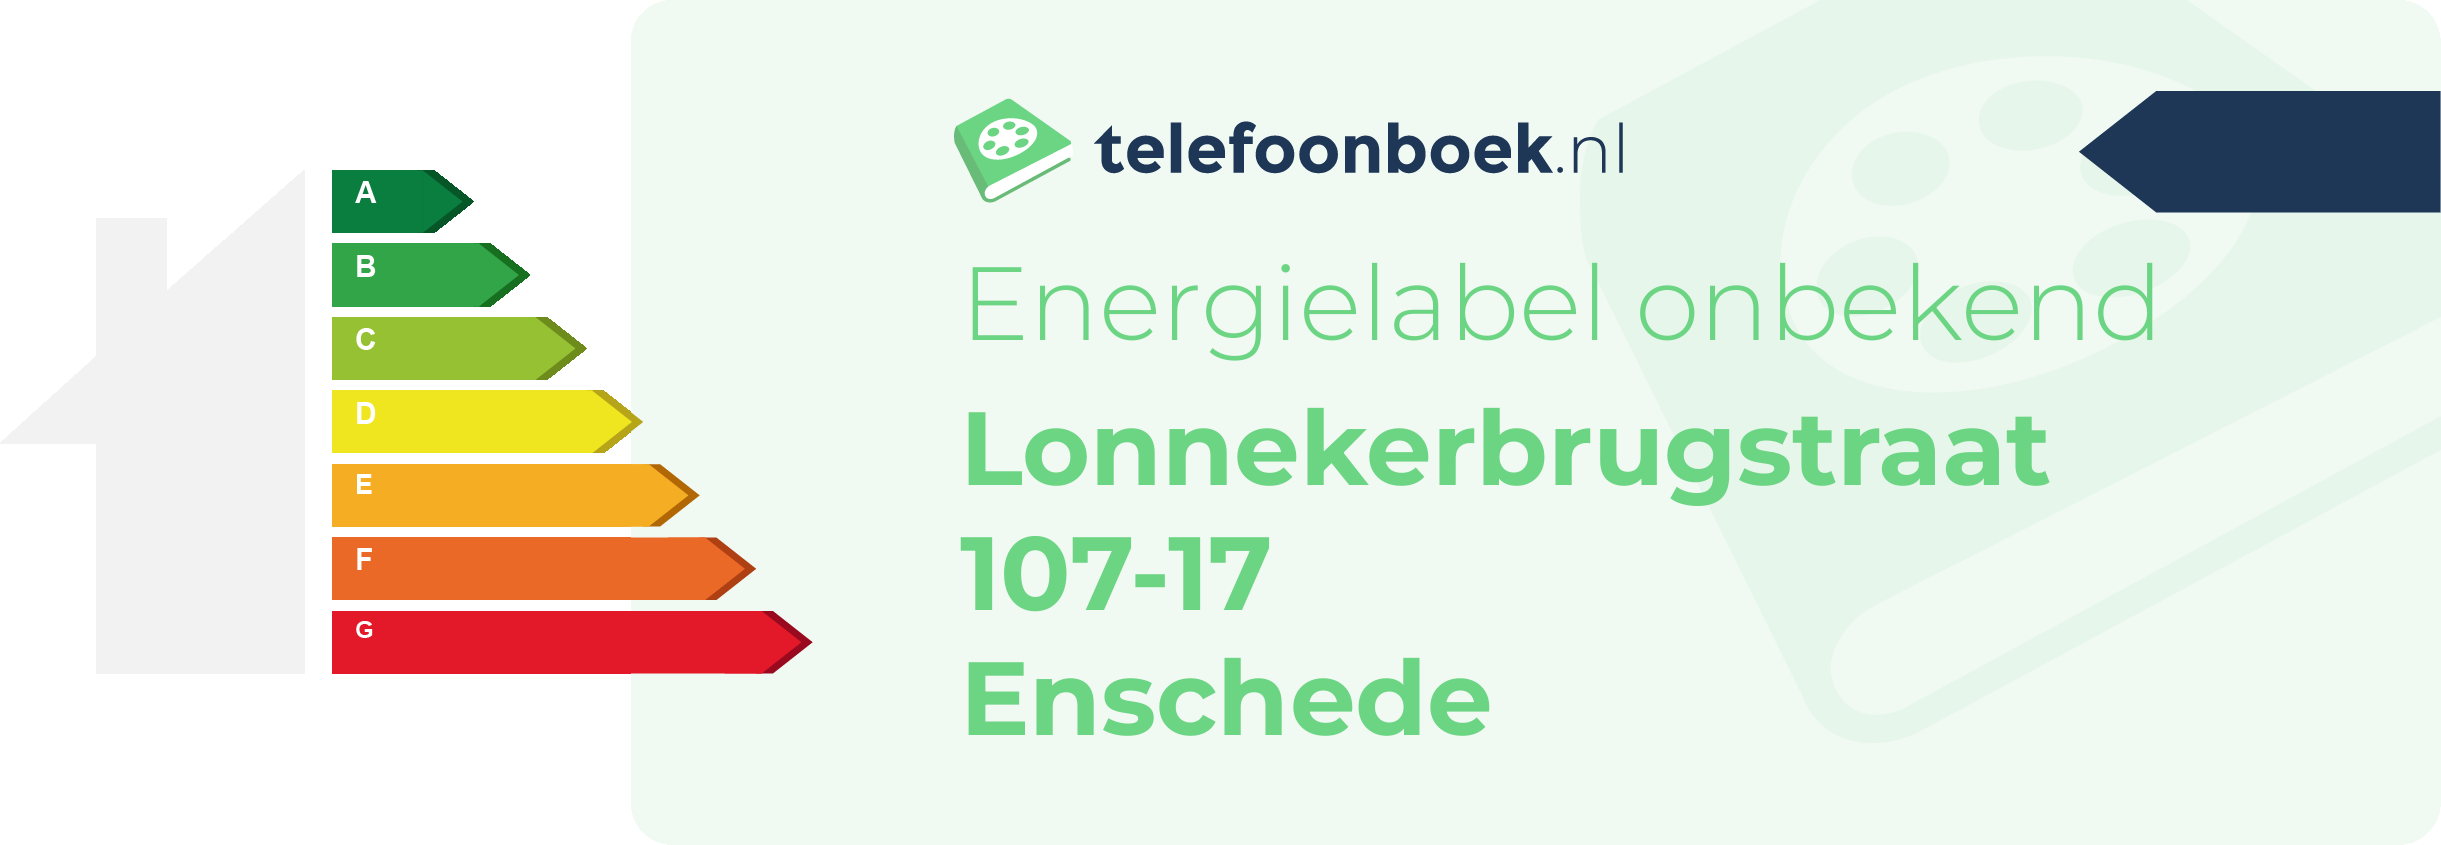 Energielabel Lonnekerbrugstraat 107-17 Enschede